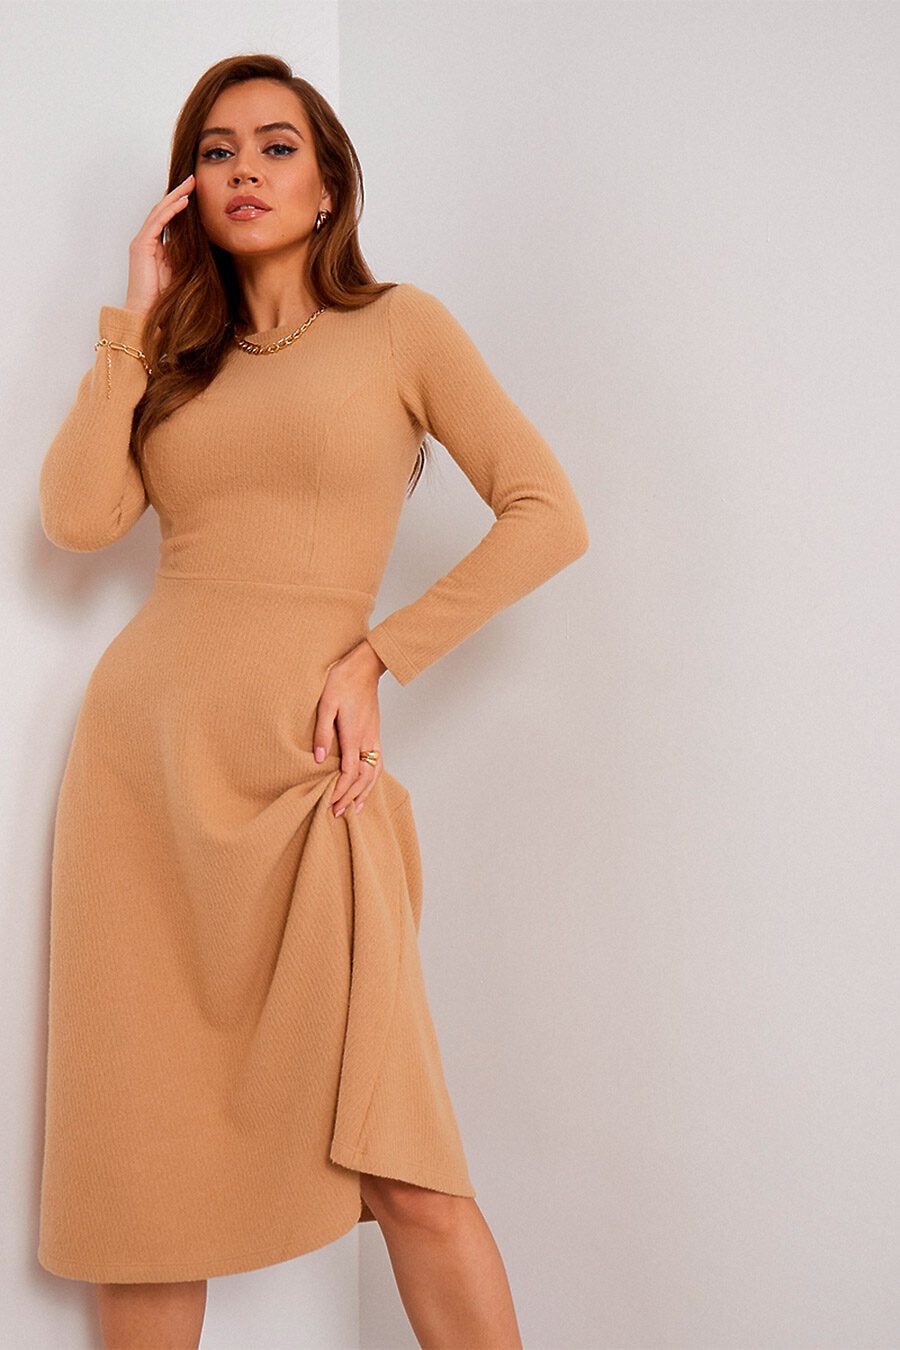 Платье для женщин VITTORIA VICCI 740270 купить оптом от производителя. Совместная покупка женской одежды в OptMoyo